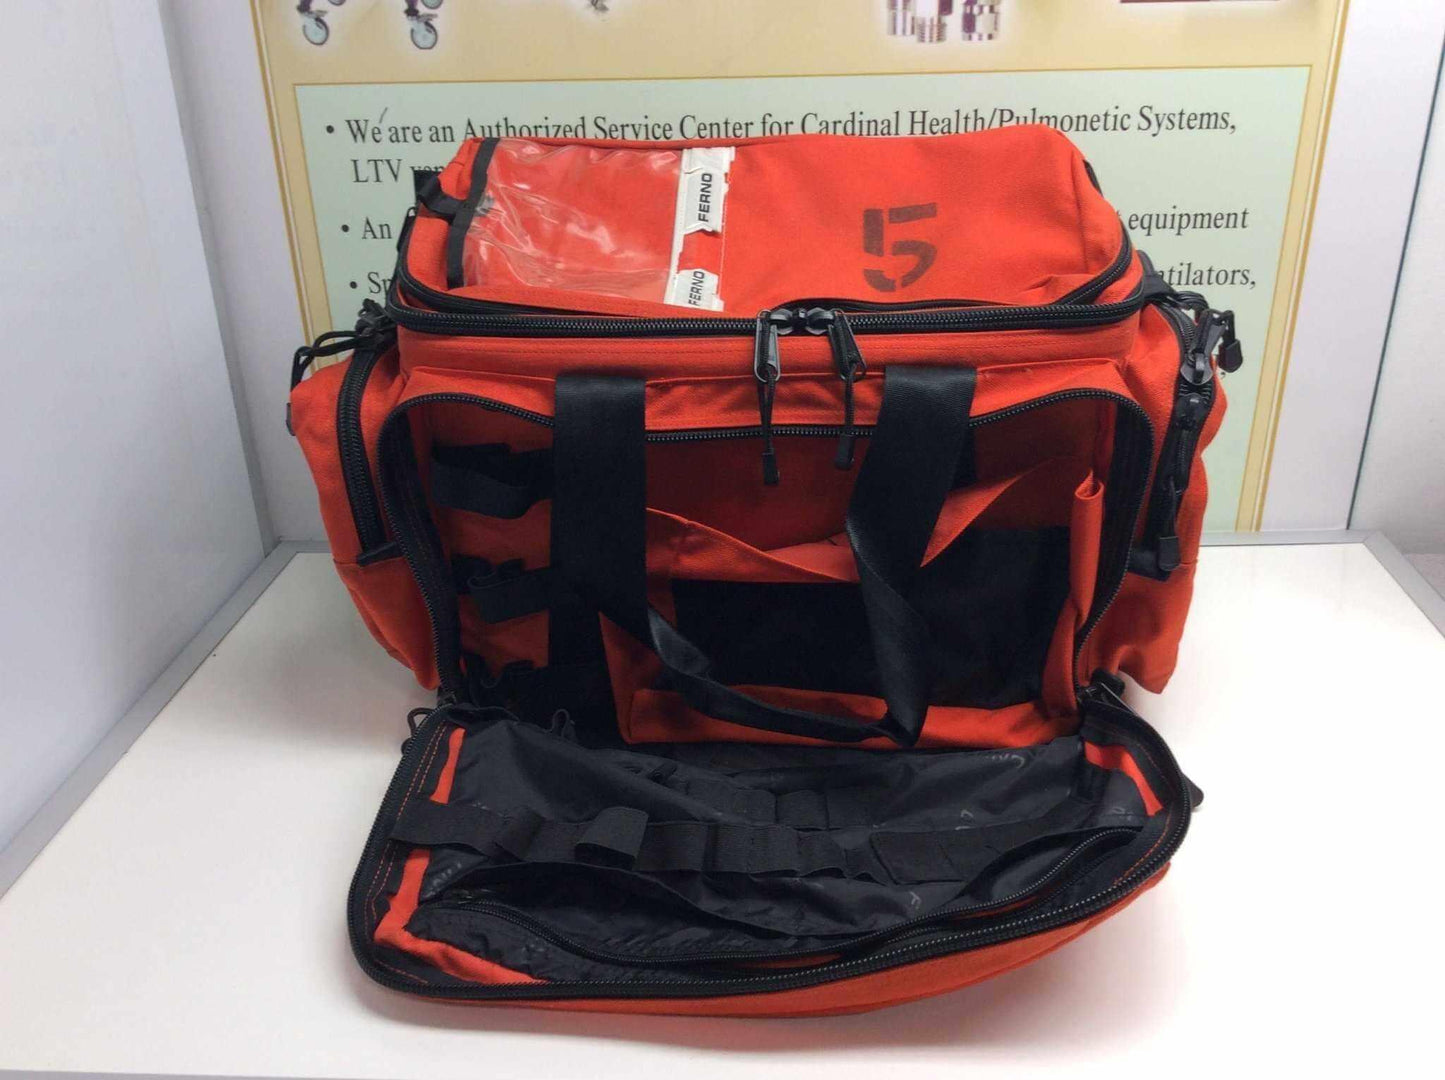 USED Ferno EMS EMT Medic First Aid Ambulance Trauma Bag 5108 - MBR Medicals